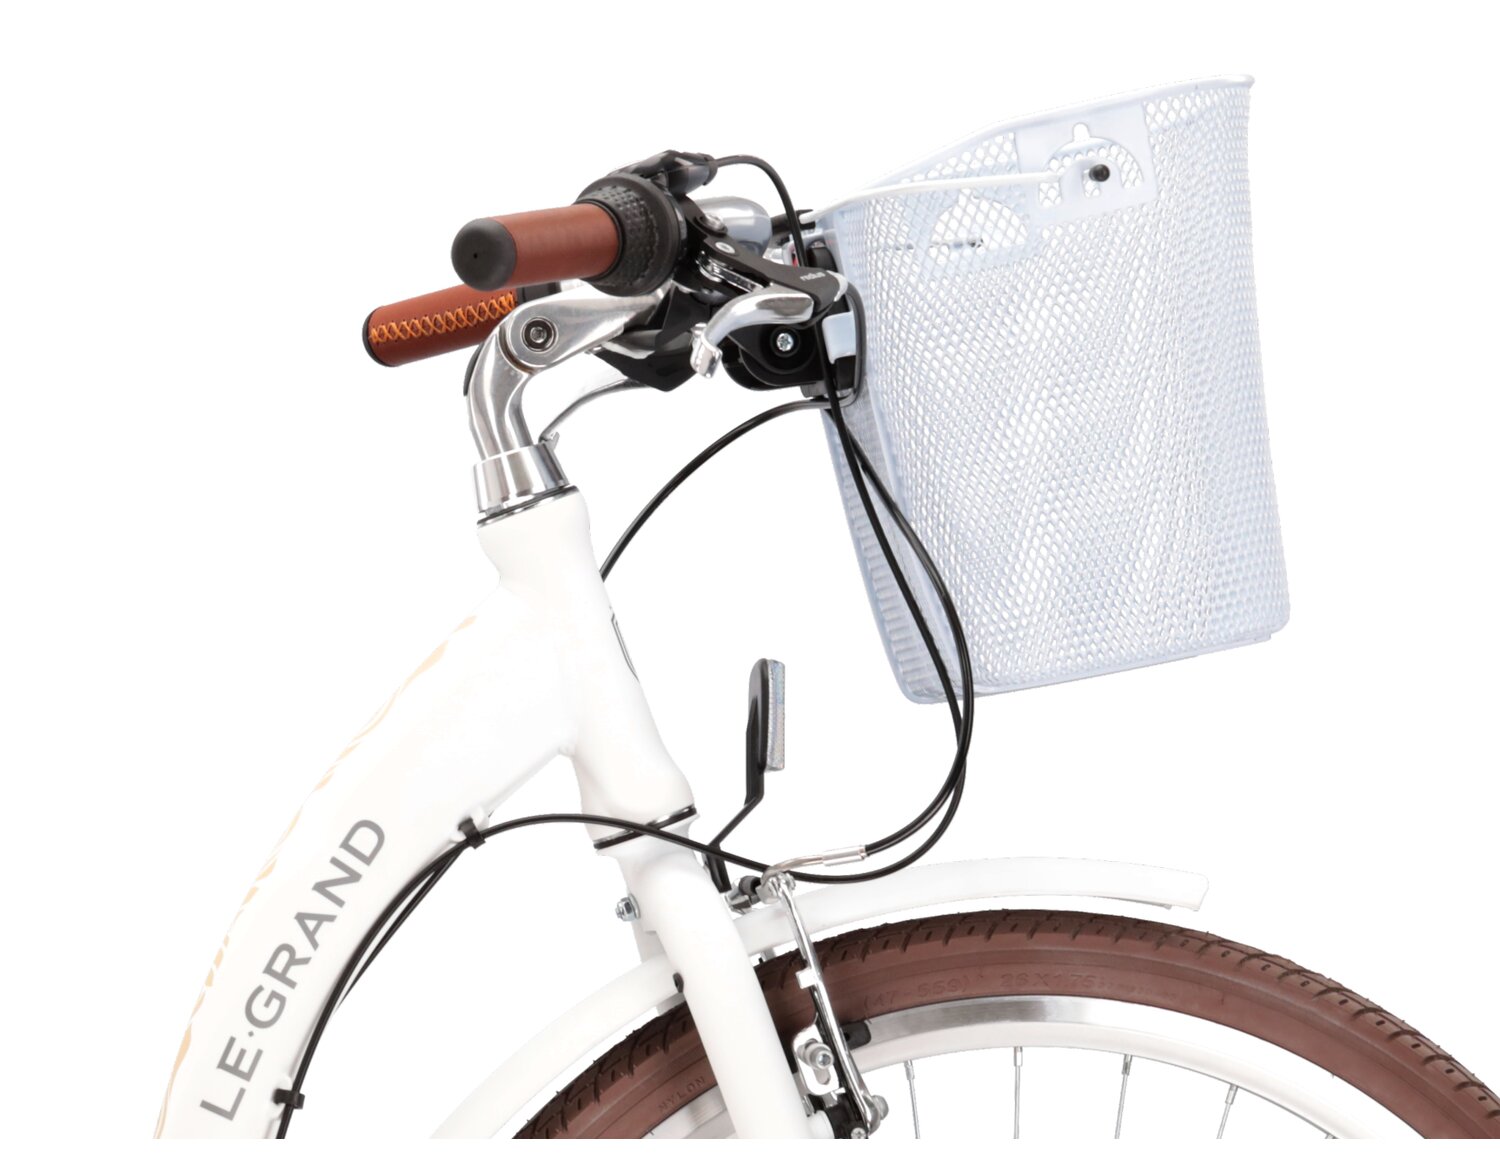 Aluminowa rama, sztywny stalowy widelec oraz opony o szerokości 1,75 cala w rowerze miejskim Le Grand Lille 3.0 